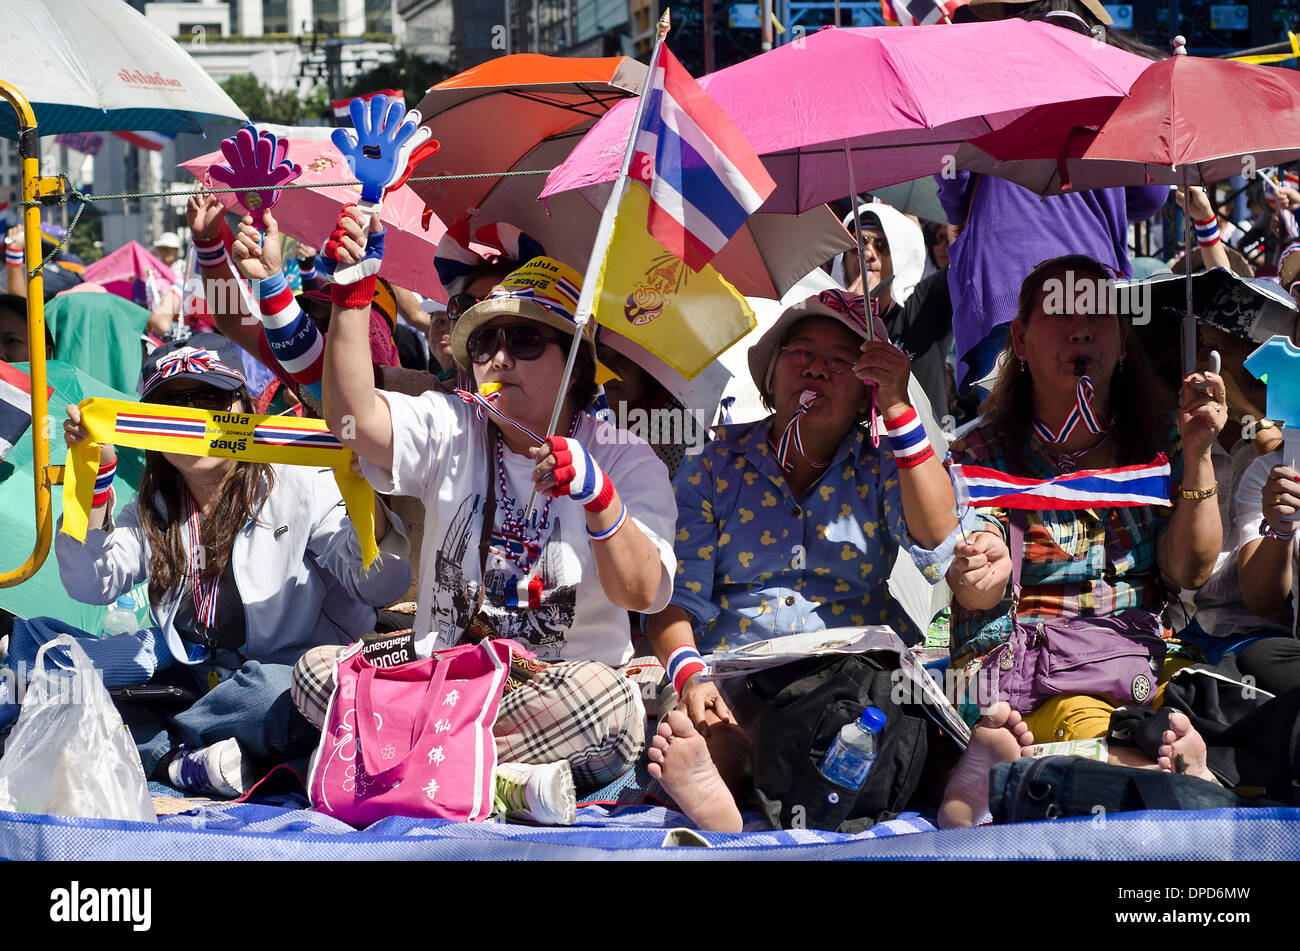 Bangkok, Thailand.13th Januar 2014.Anti Regierung Demonstranten Schlag pfeift auf der Straße von Bangkok.Tens von Tausenden von thailändischen Opposition Demonstranten besetzten Hauptstraßen im Zentrum von Bangkok am Montag in einem versuchten "Herunterfahren" des Kapitals, die Regierung von Yingluck Shinawatra zu verdrängen. Stockfoto